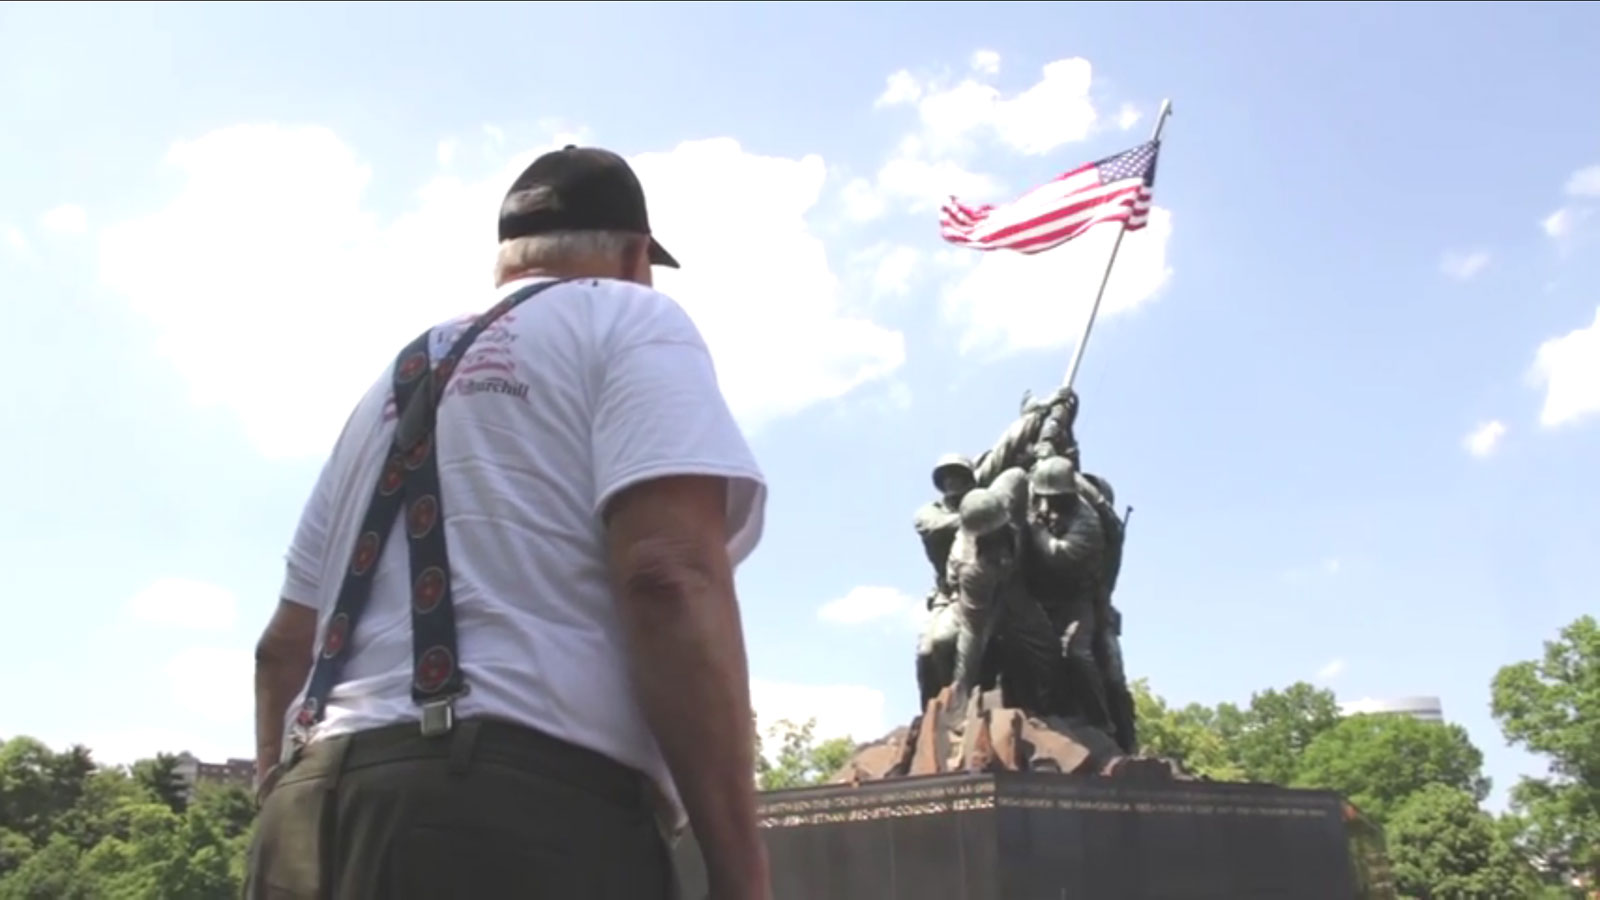 Veteran in Washington D.C. visiting the veterans memorials. Photo courtesy of Travis Weger.